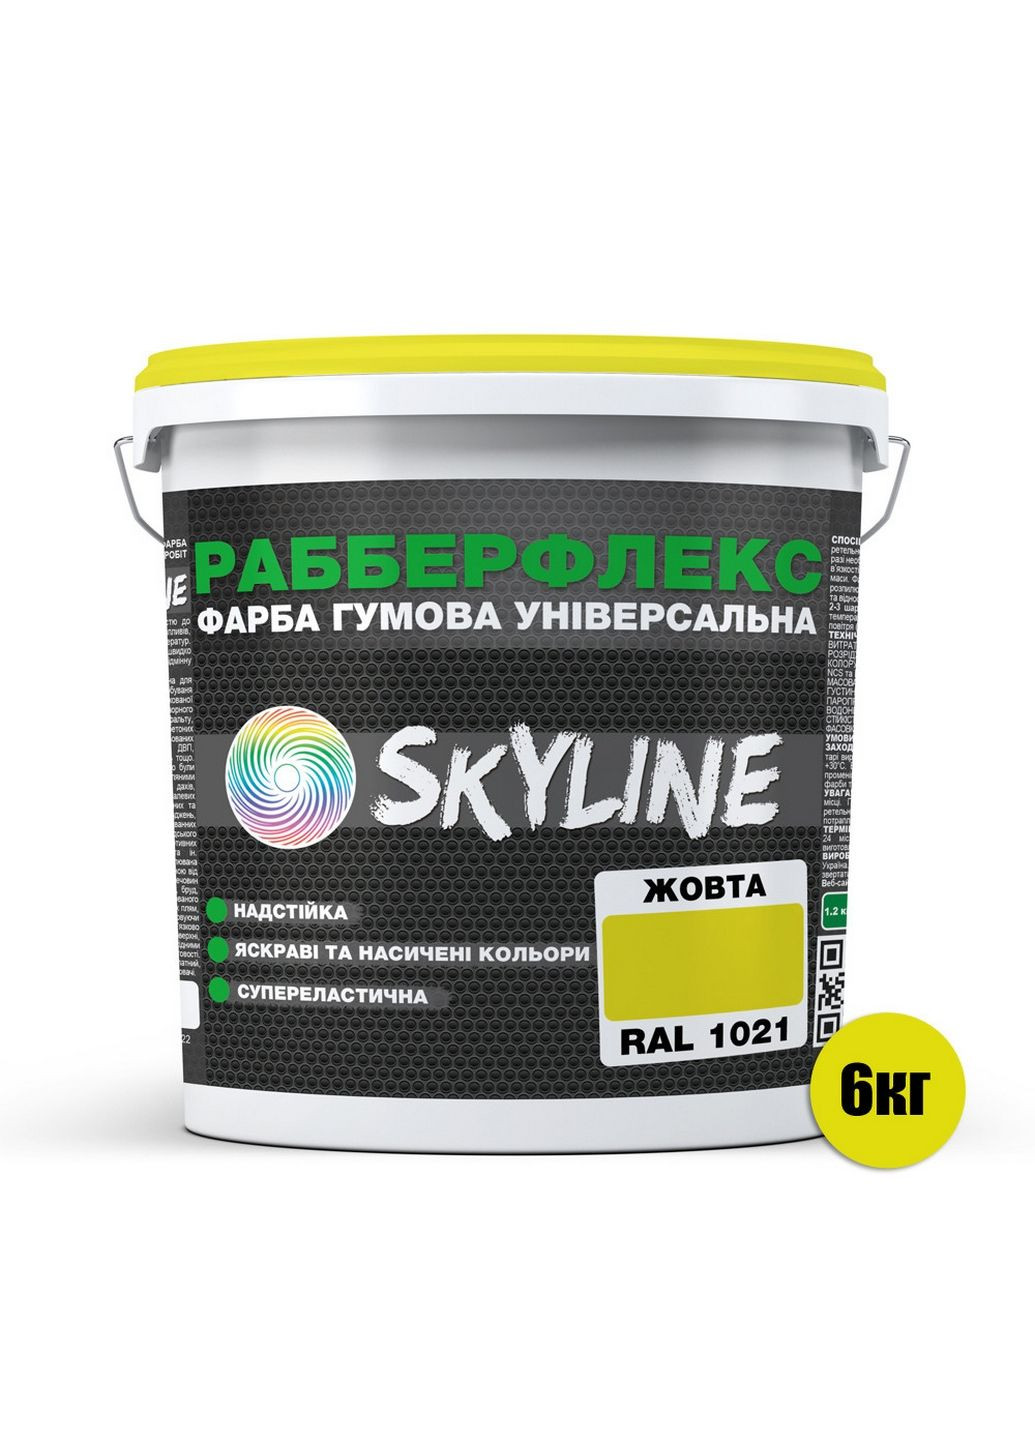 Надстійка фарба гумова супереластична «РабберФлекс» 6 кг SkyLine (289462258)